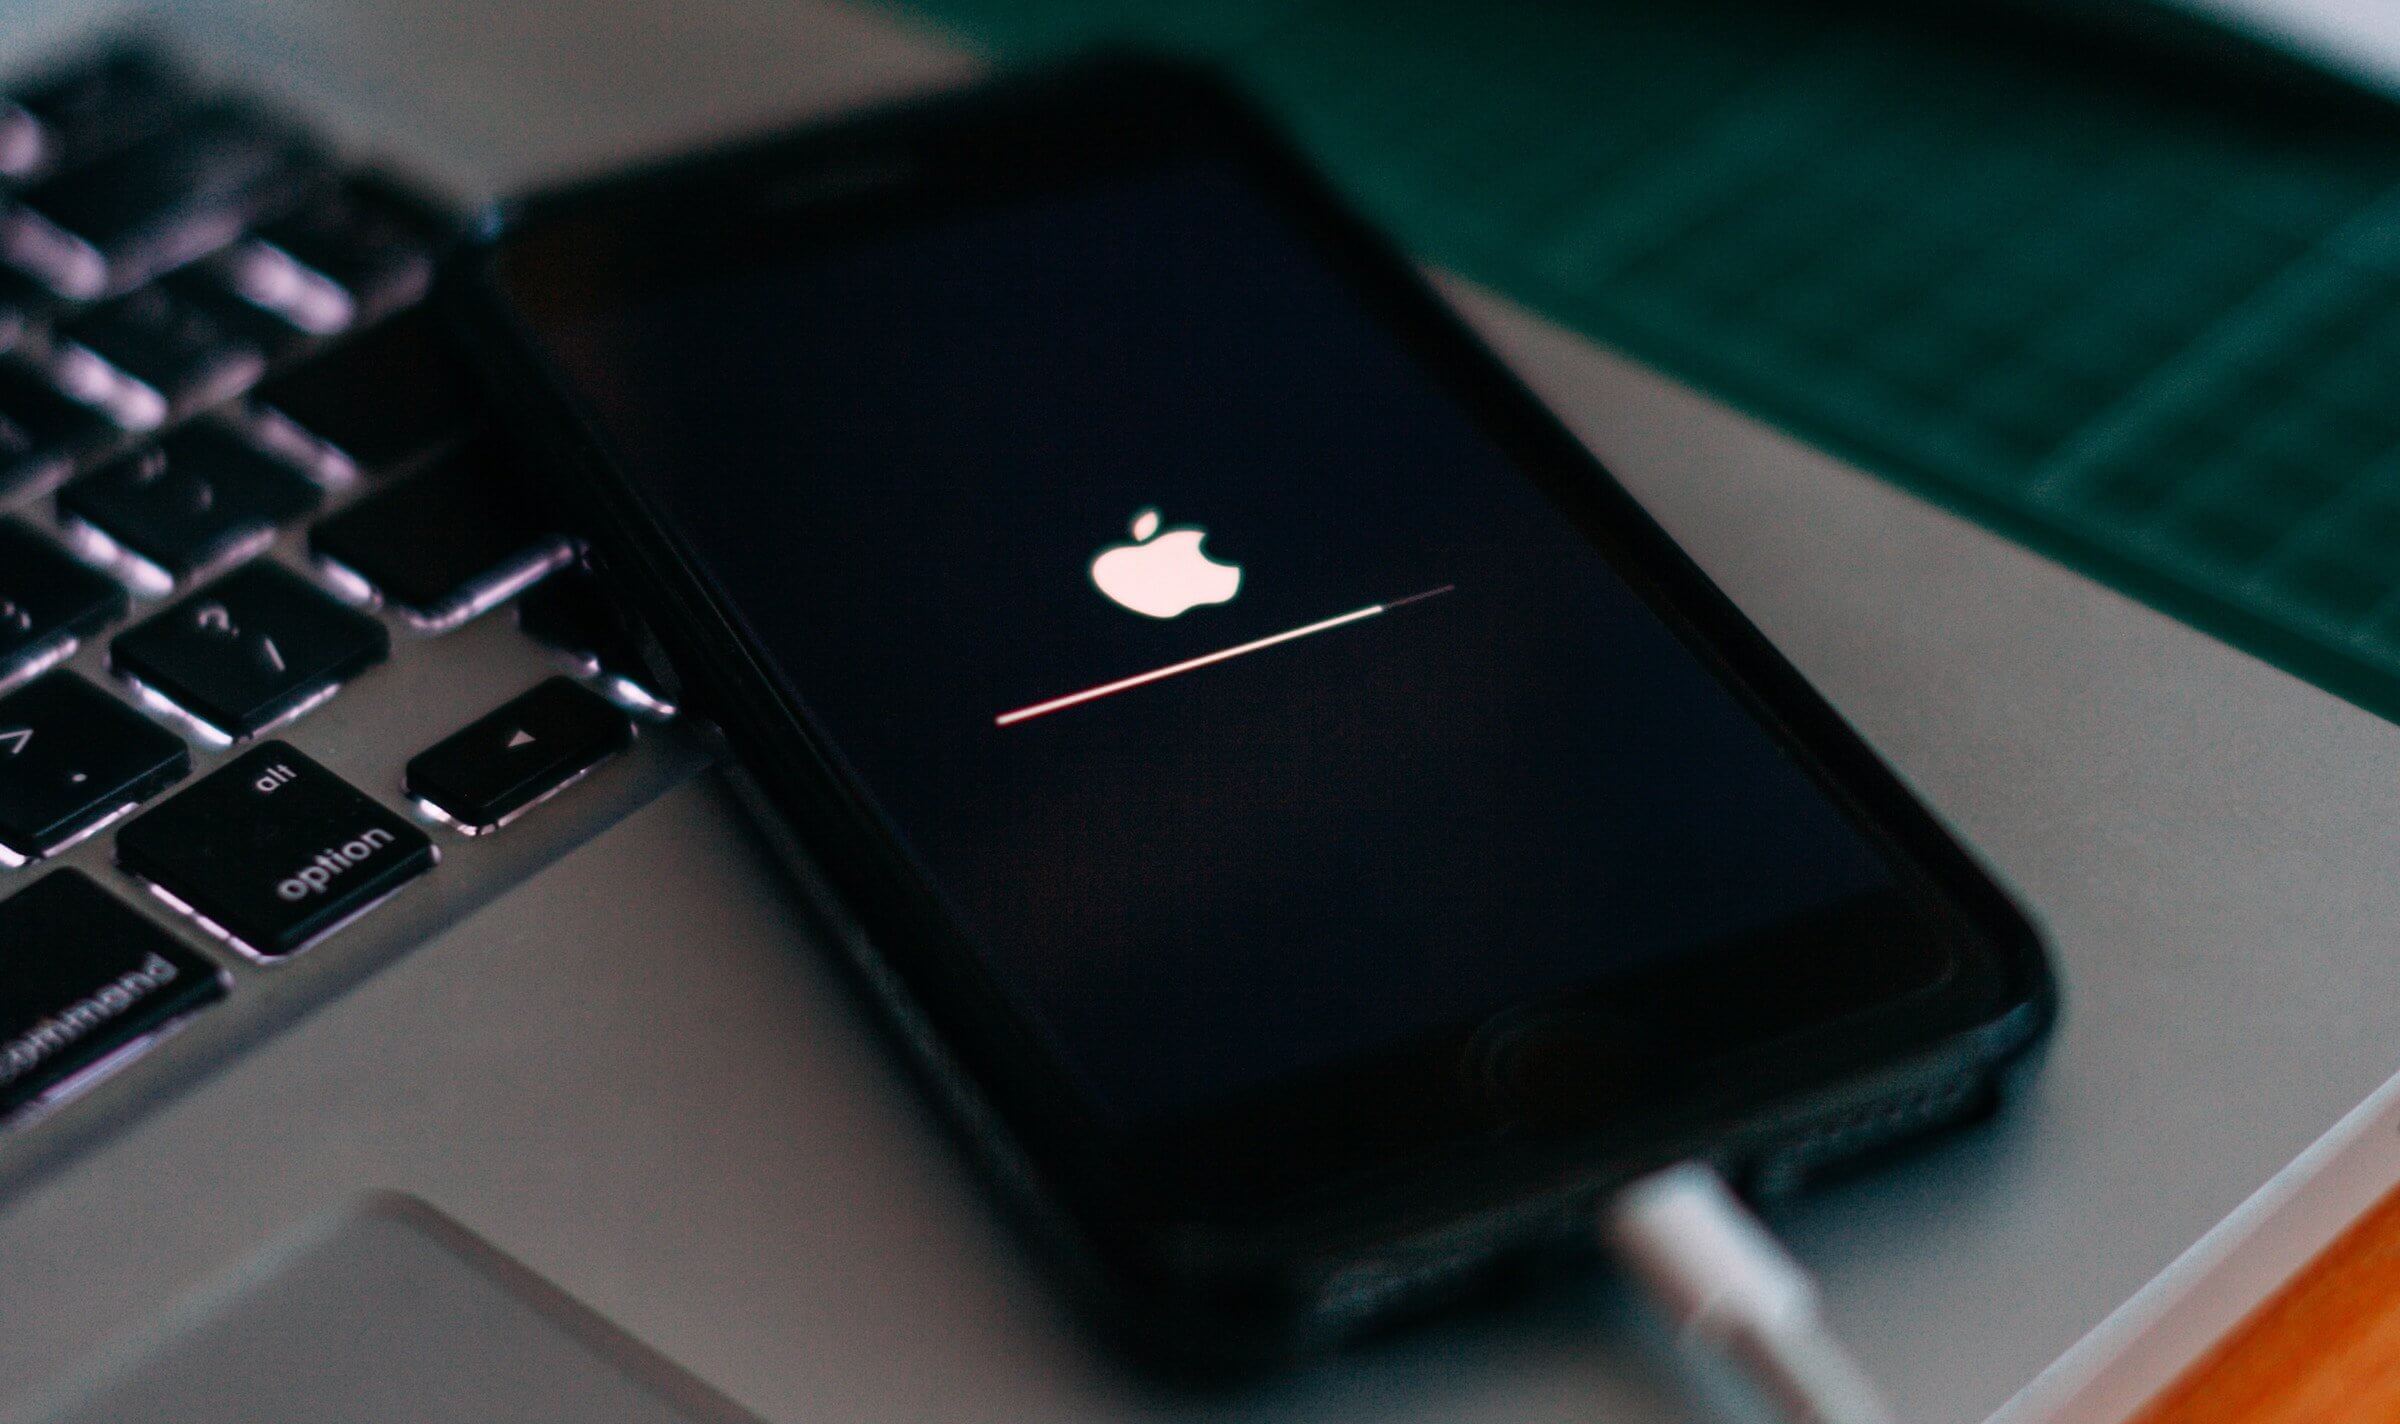 Айфон завис на яблоке. Причины и способы восстановления | AppleInsider.ru